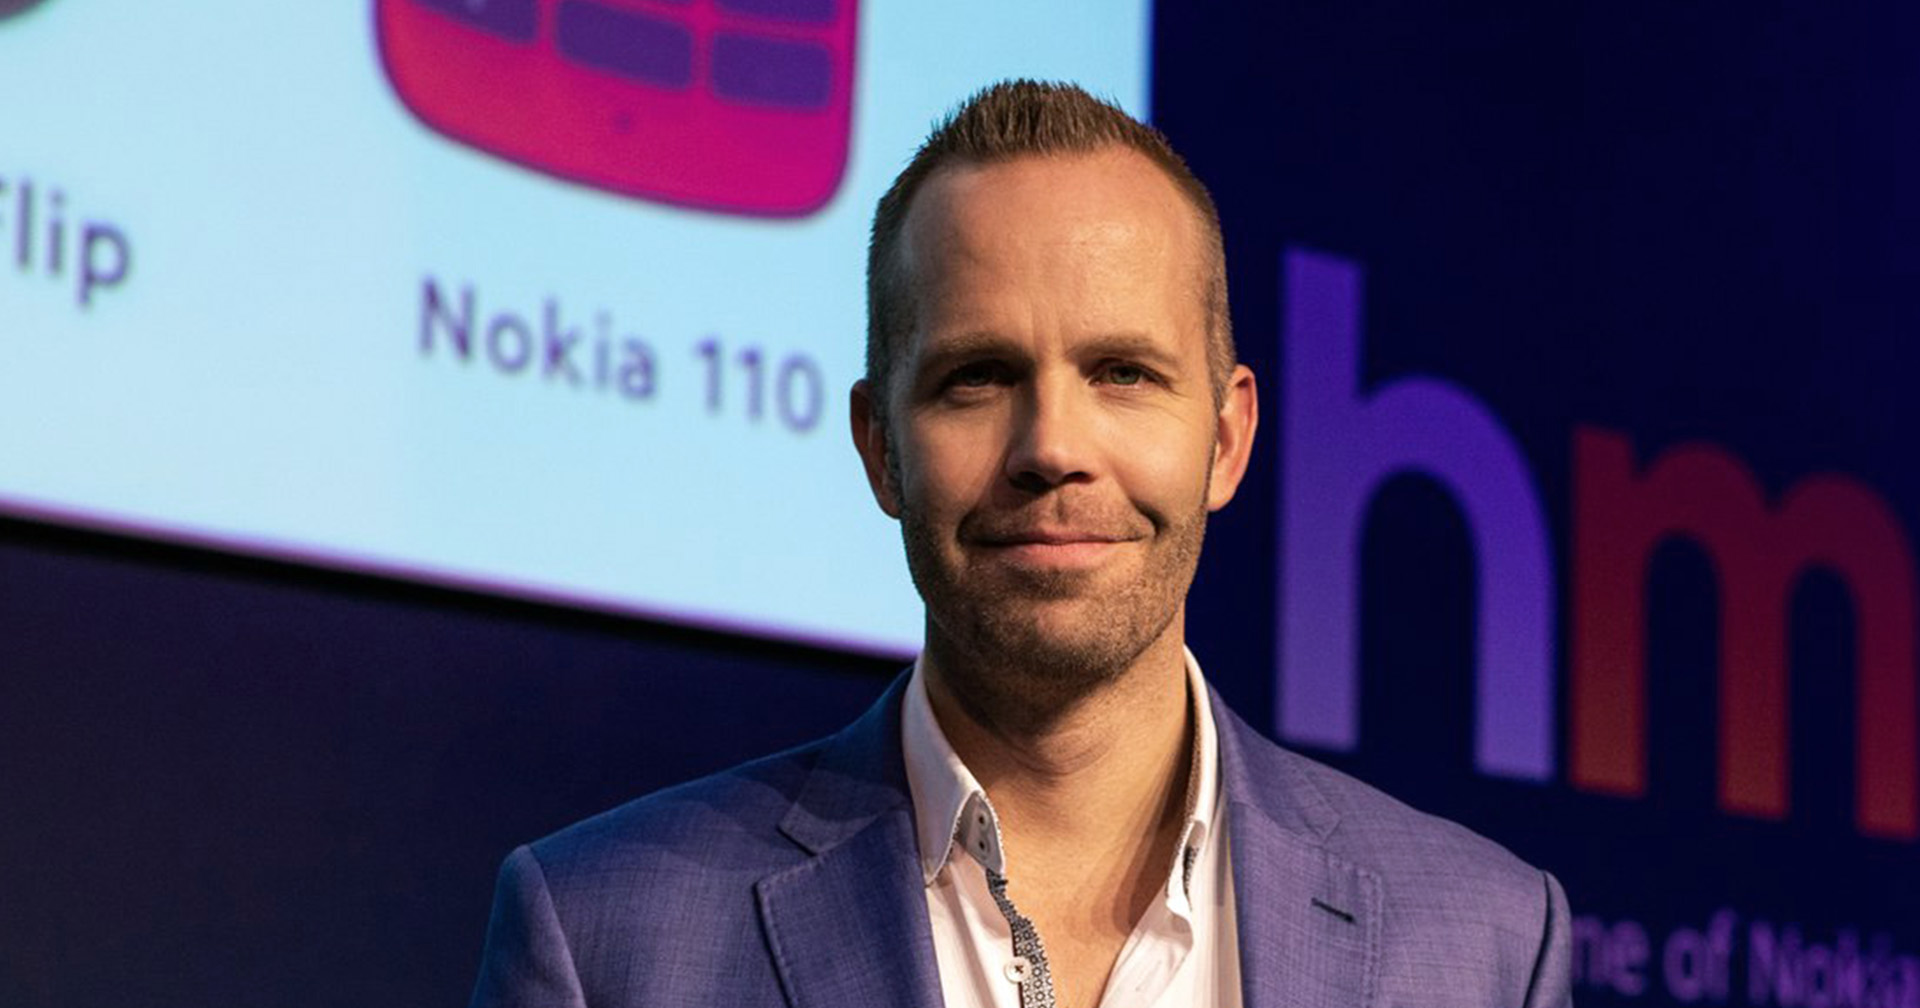 Juho Sarvikas อดีตผู้บริหาร Nokia จะไปทำงานกับ Qualcomm